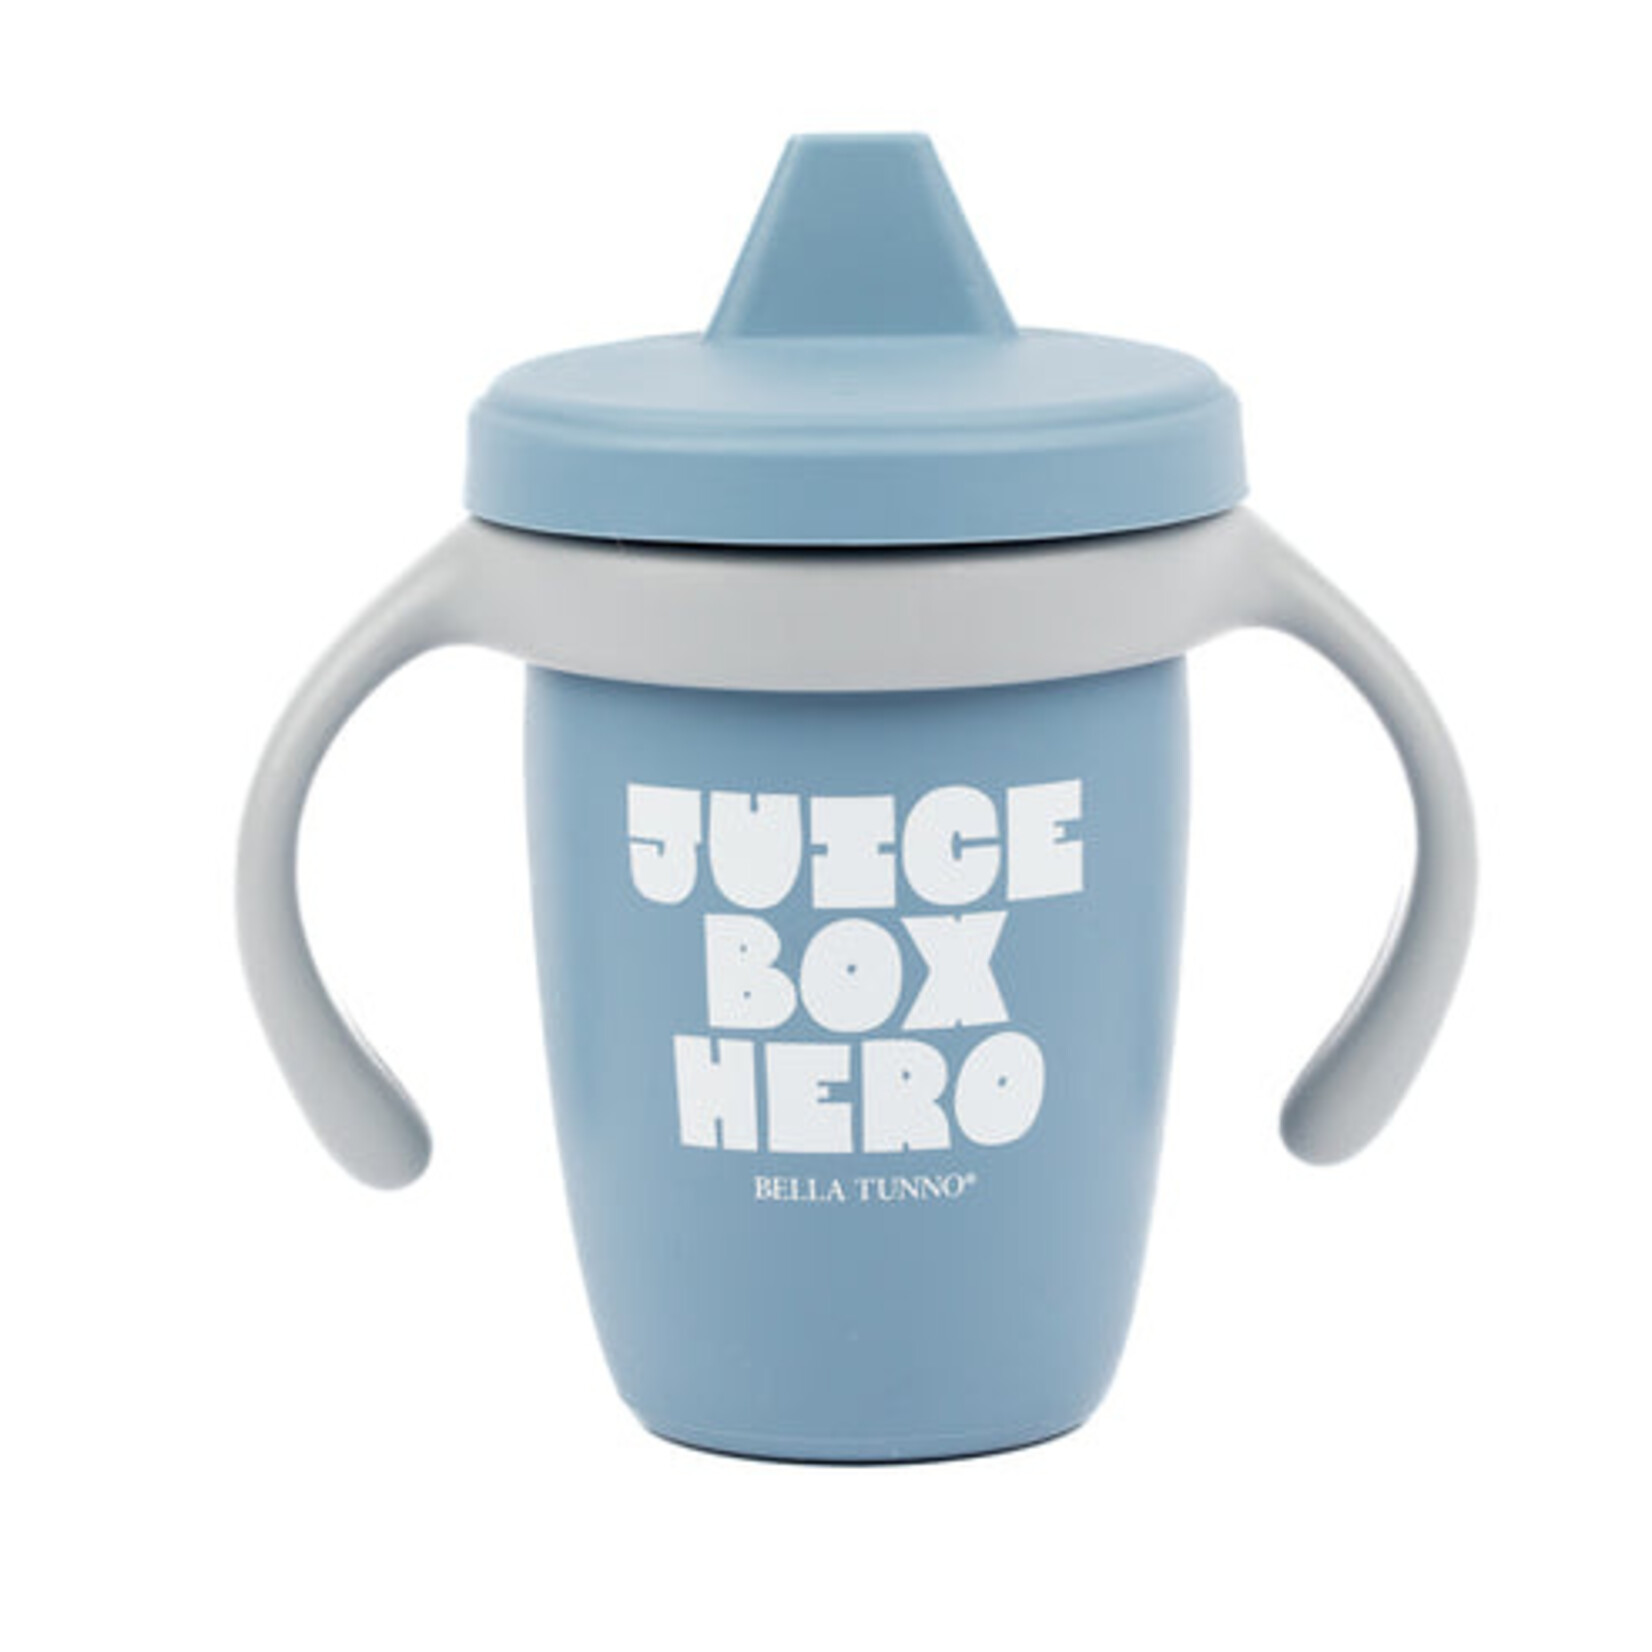 Bella Tunno Bella Tunno - Juice Box Hero Sippy Cup